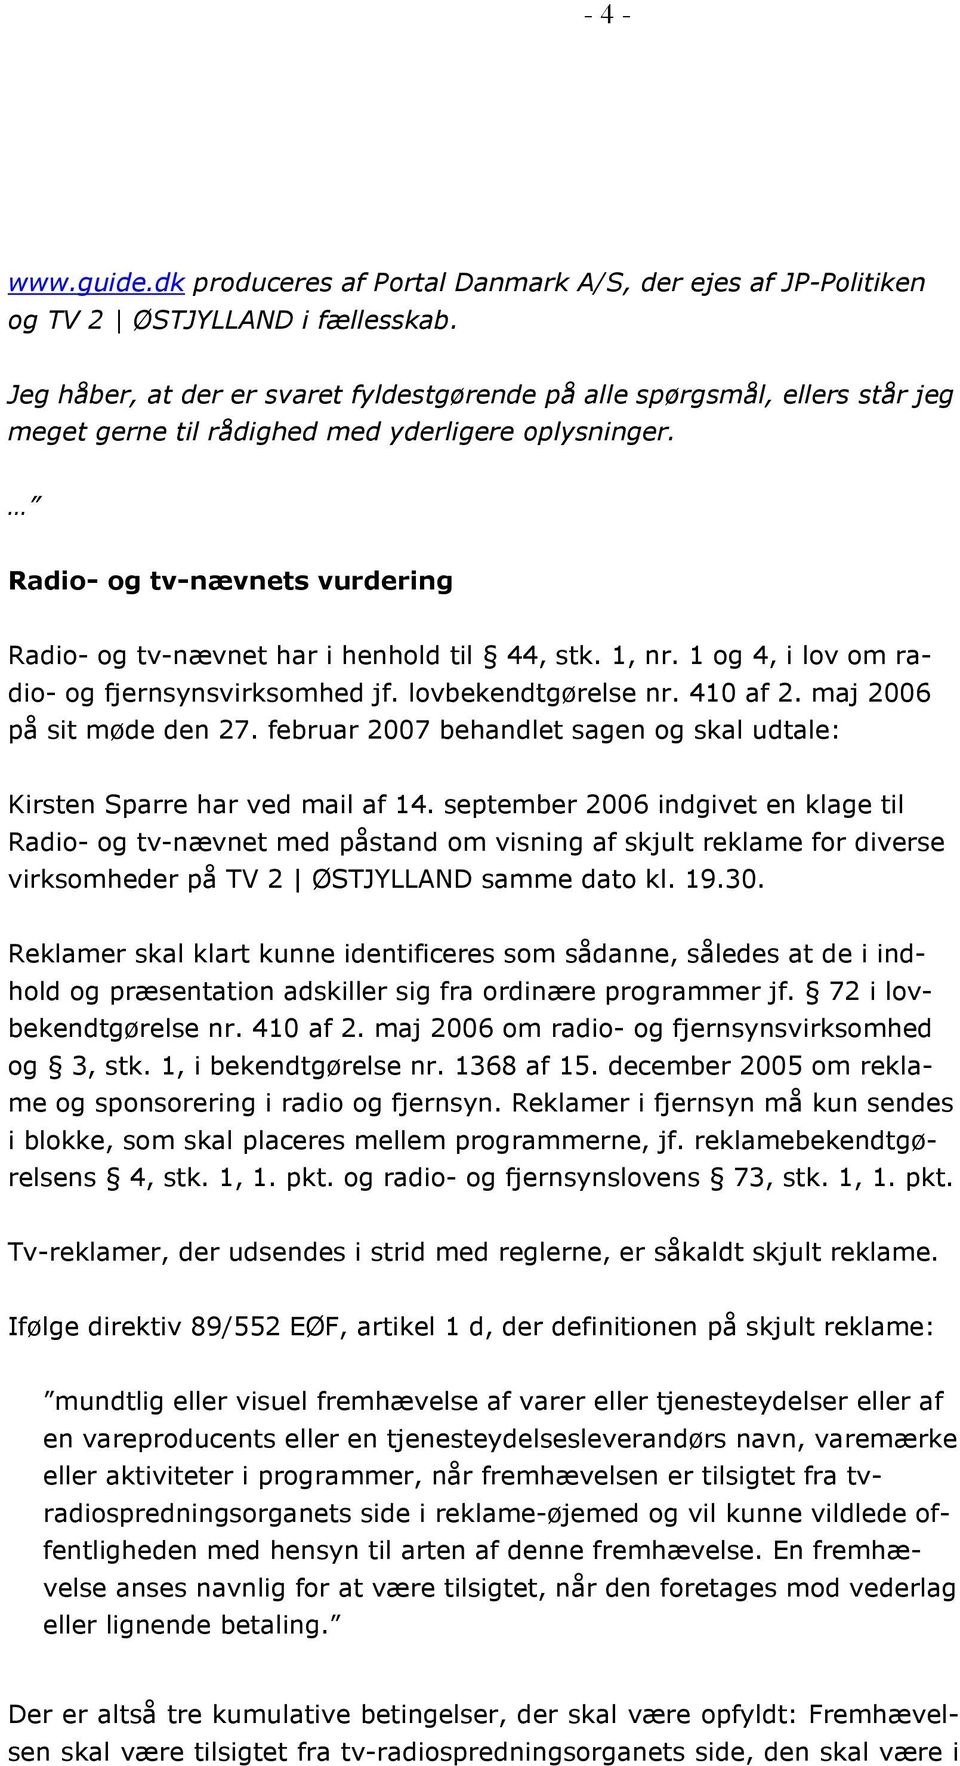 Radio- og tv-nævnets vurdering Radio- og tv-nævnet har i henhold til 44, stk. 1, nr. 1 og 4, i lov om radio- og fjernsynsvirksomhed jf. lovbekendtgørelse nr. 410 af 2. maj 2006 på sit møde den 27.